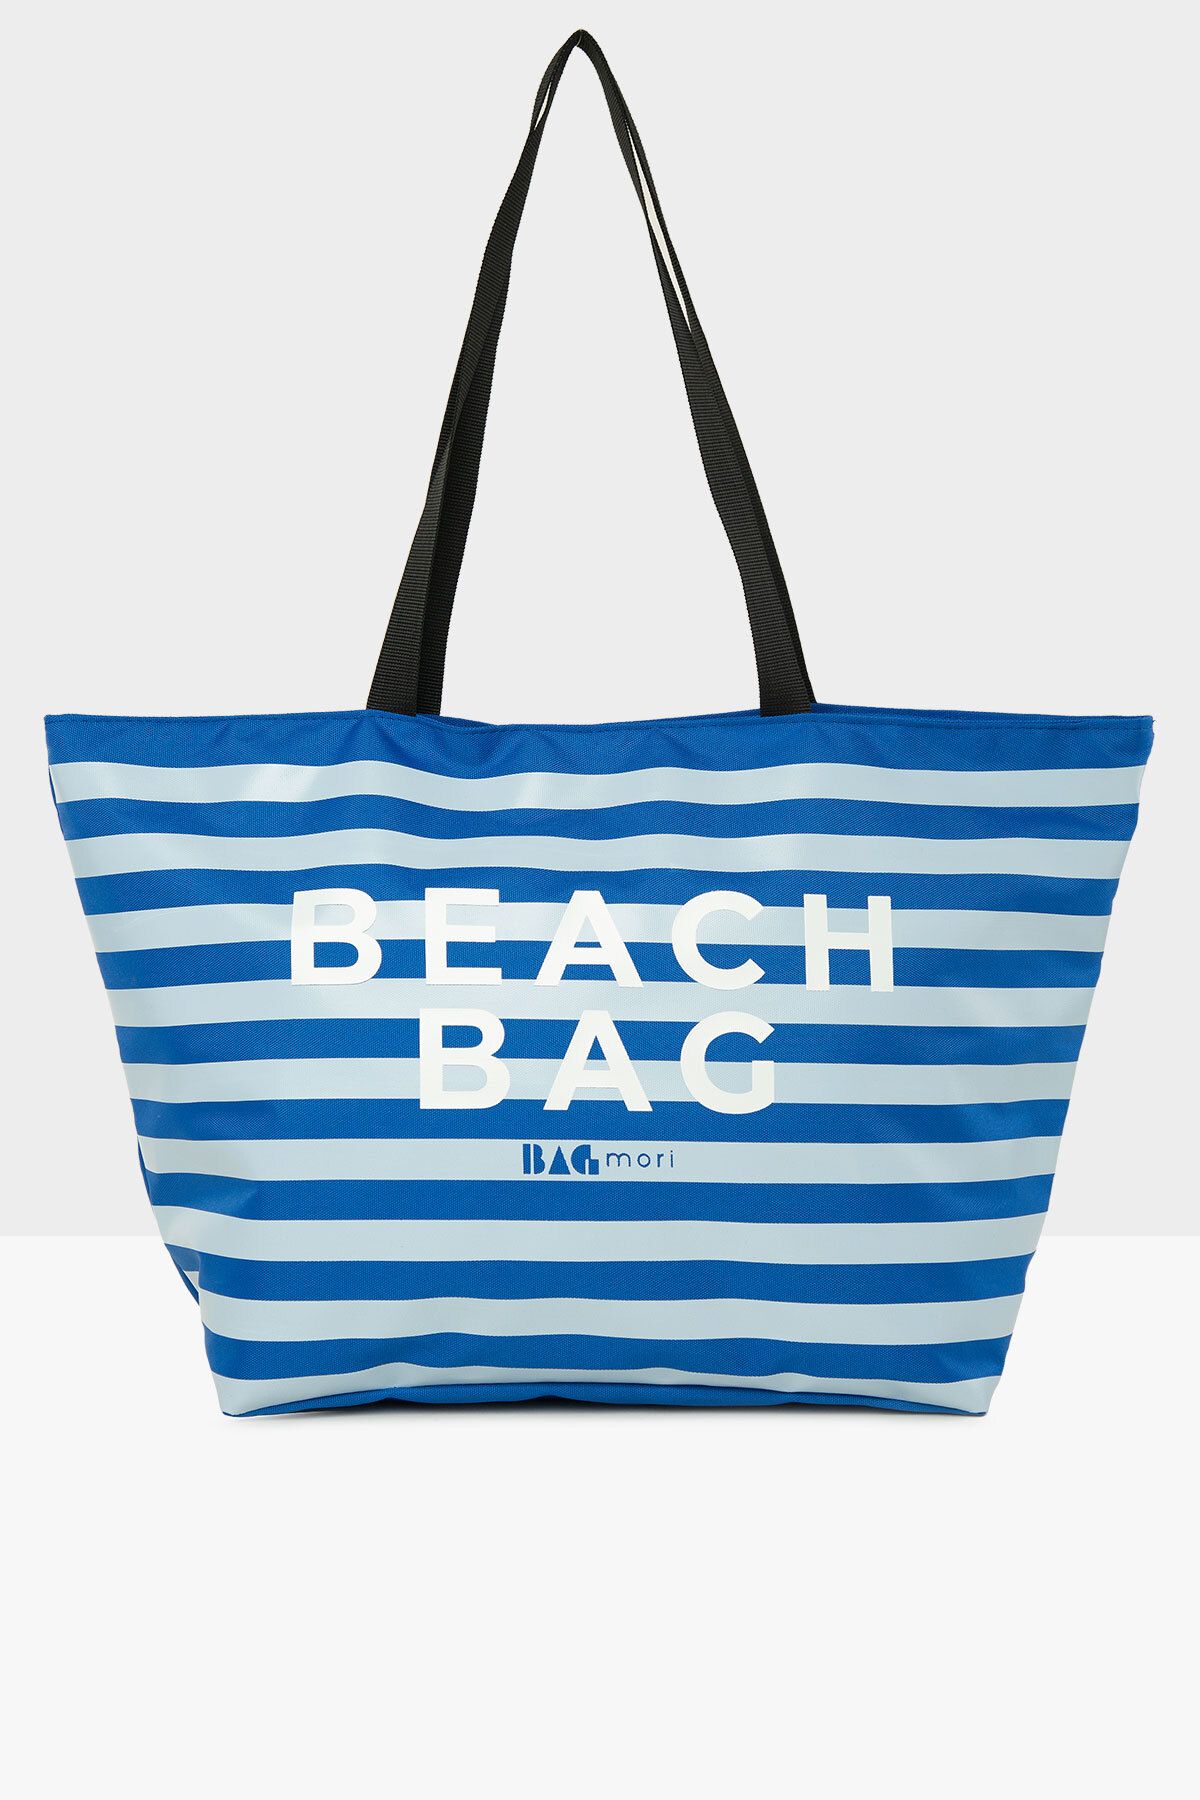 Bagmori Mavi Kadın Çizgili Beach Bag Baskılı Plaj Çantası M000008438